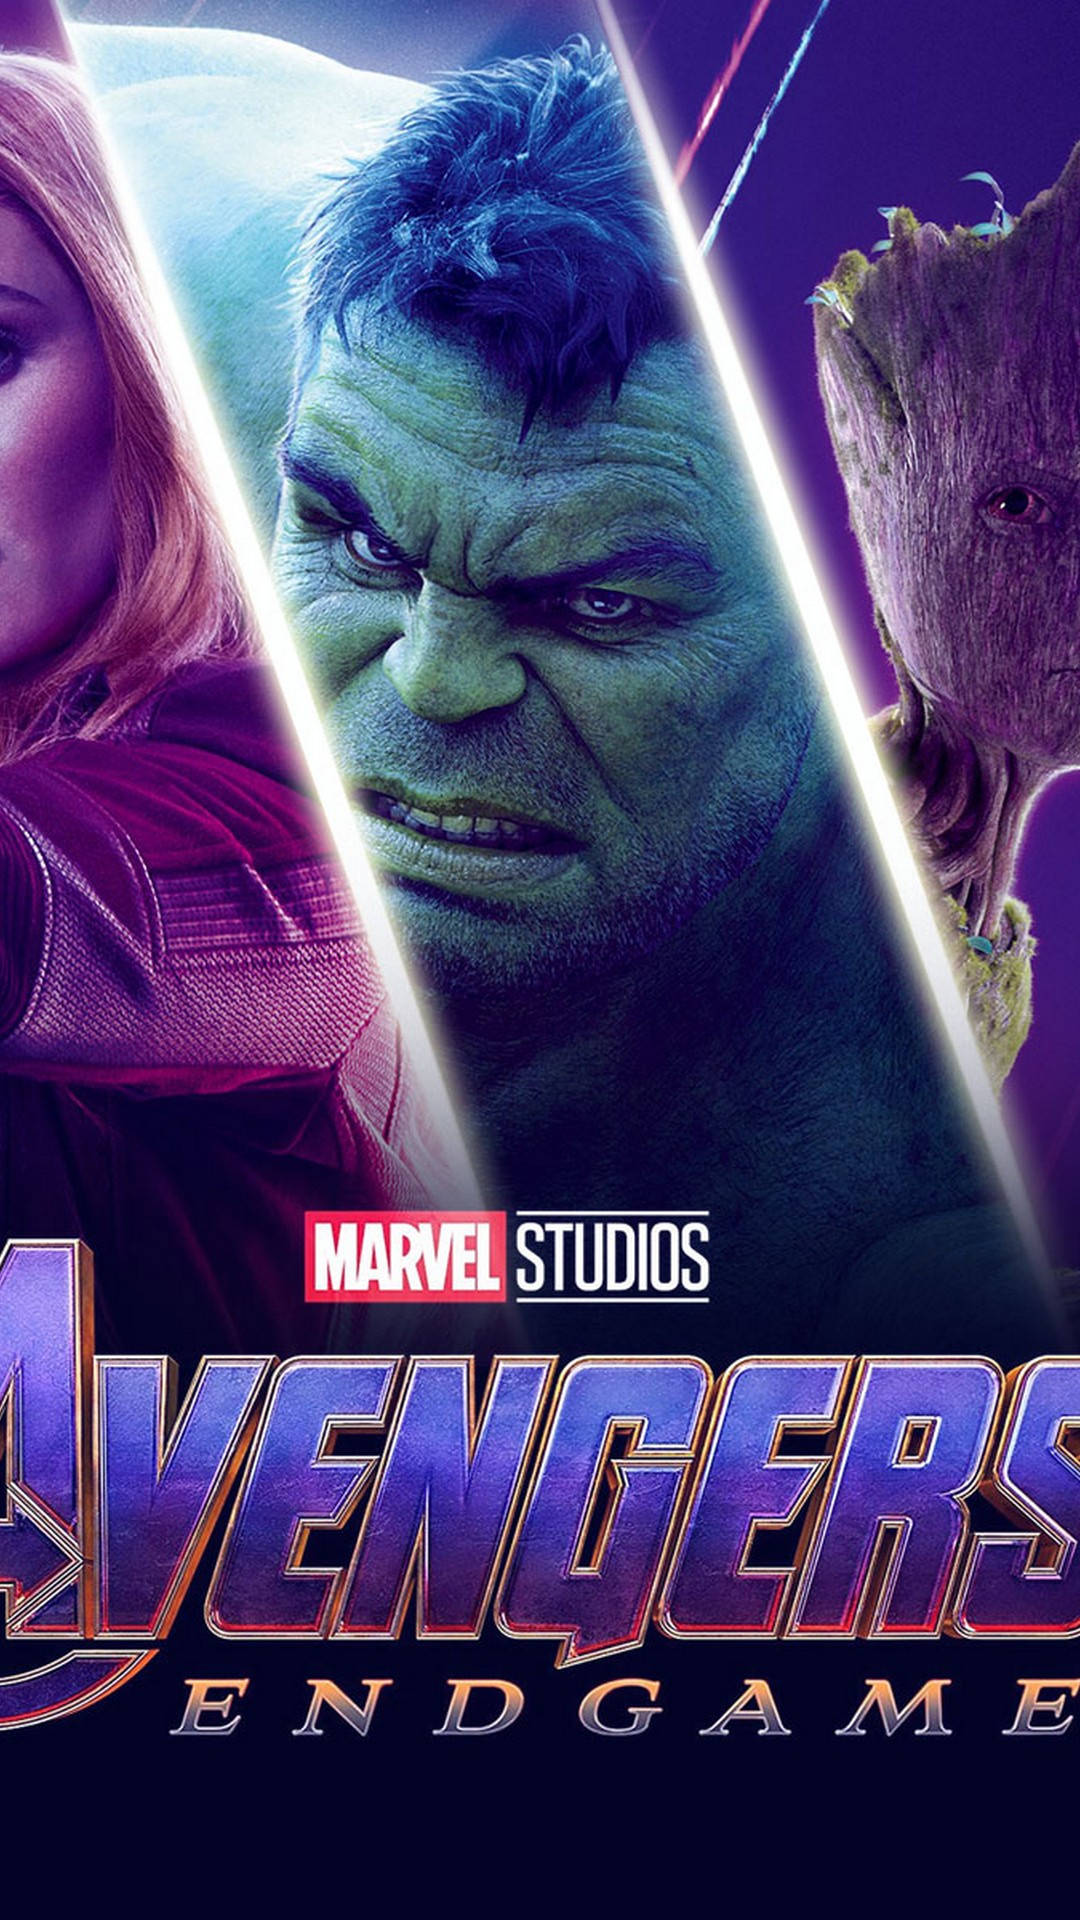 The Avengers Unite in Marvel's Epic Finale, "Avengers Endgame" Wallpaper